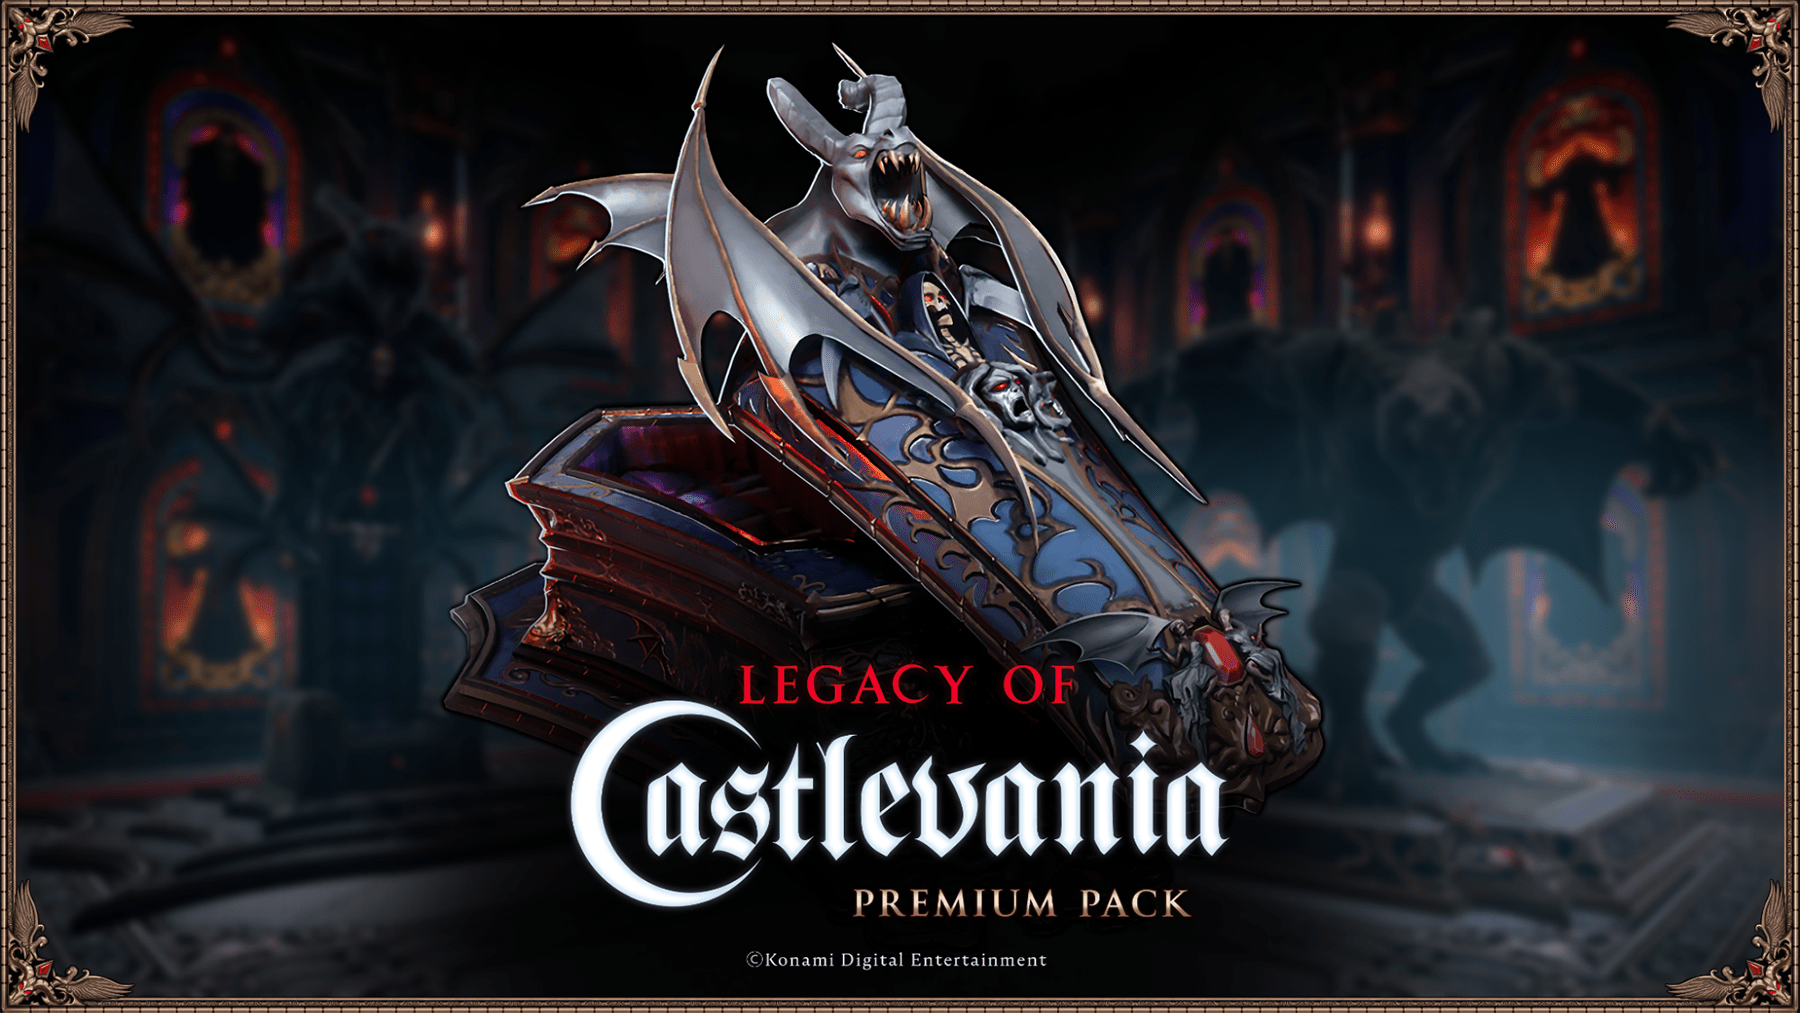 Premiera kooperacji V Rising - Legacy of Castlevania odbędzie się 8 maja